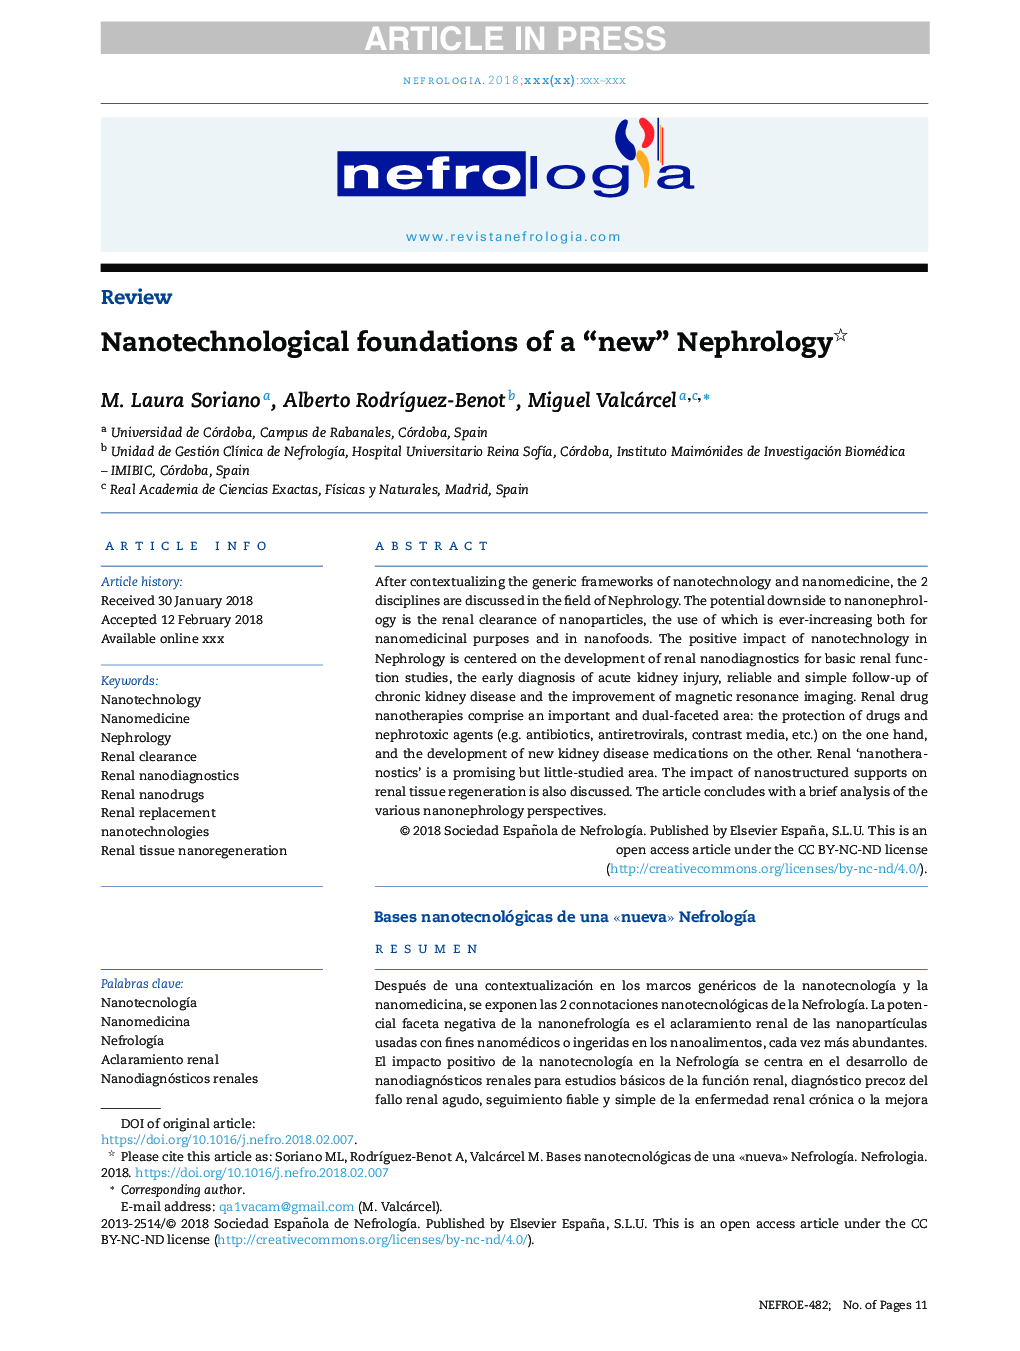 Nanotechnological foundations of a “new” Nephrology